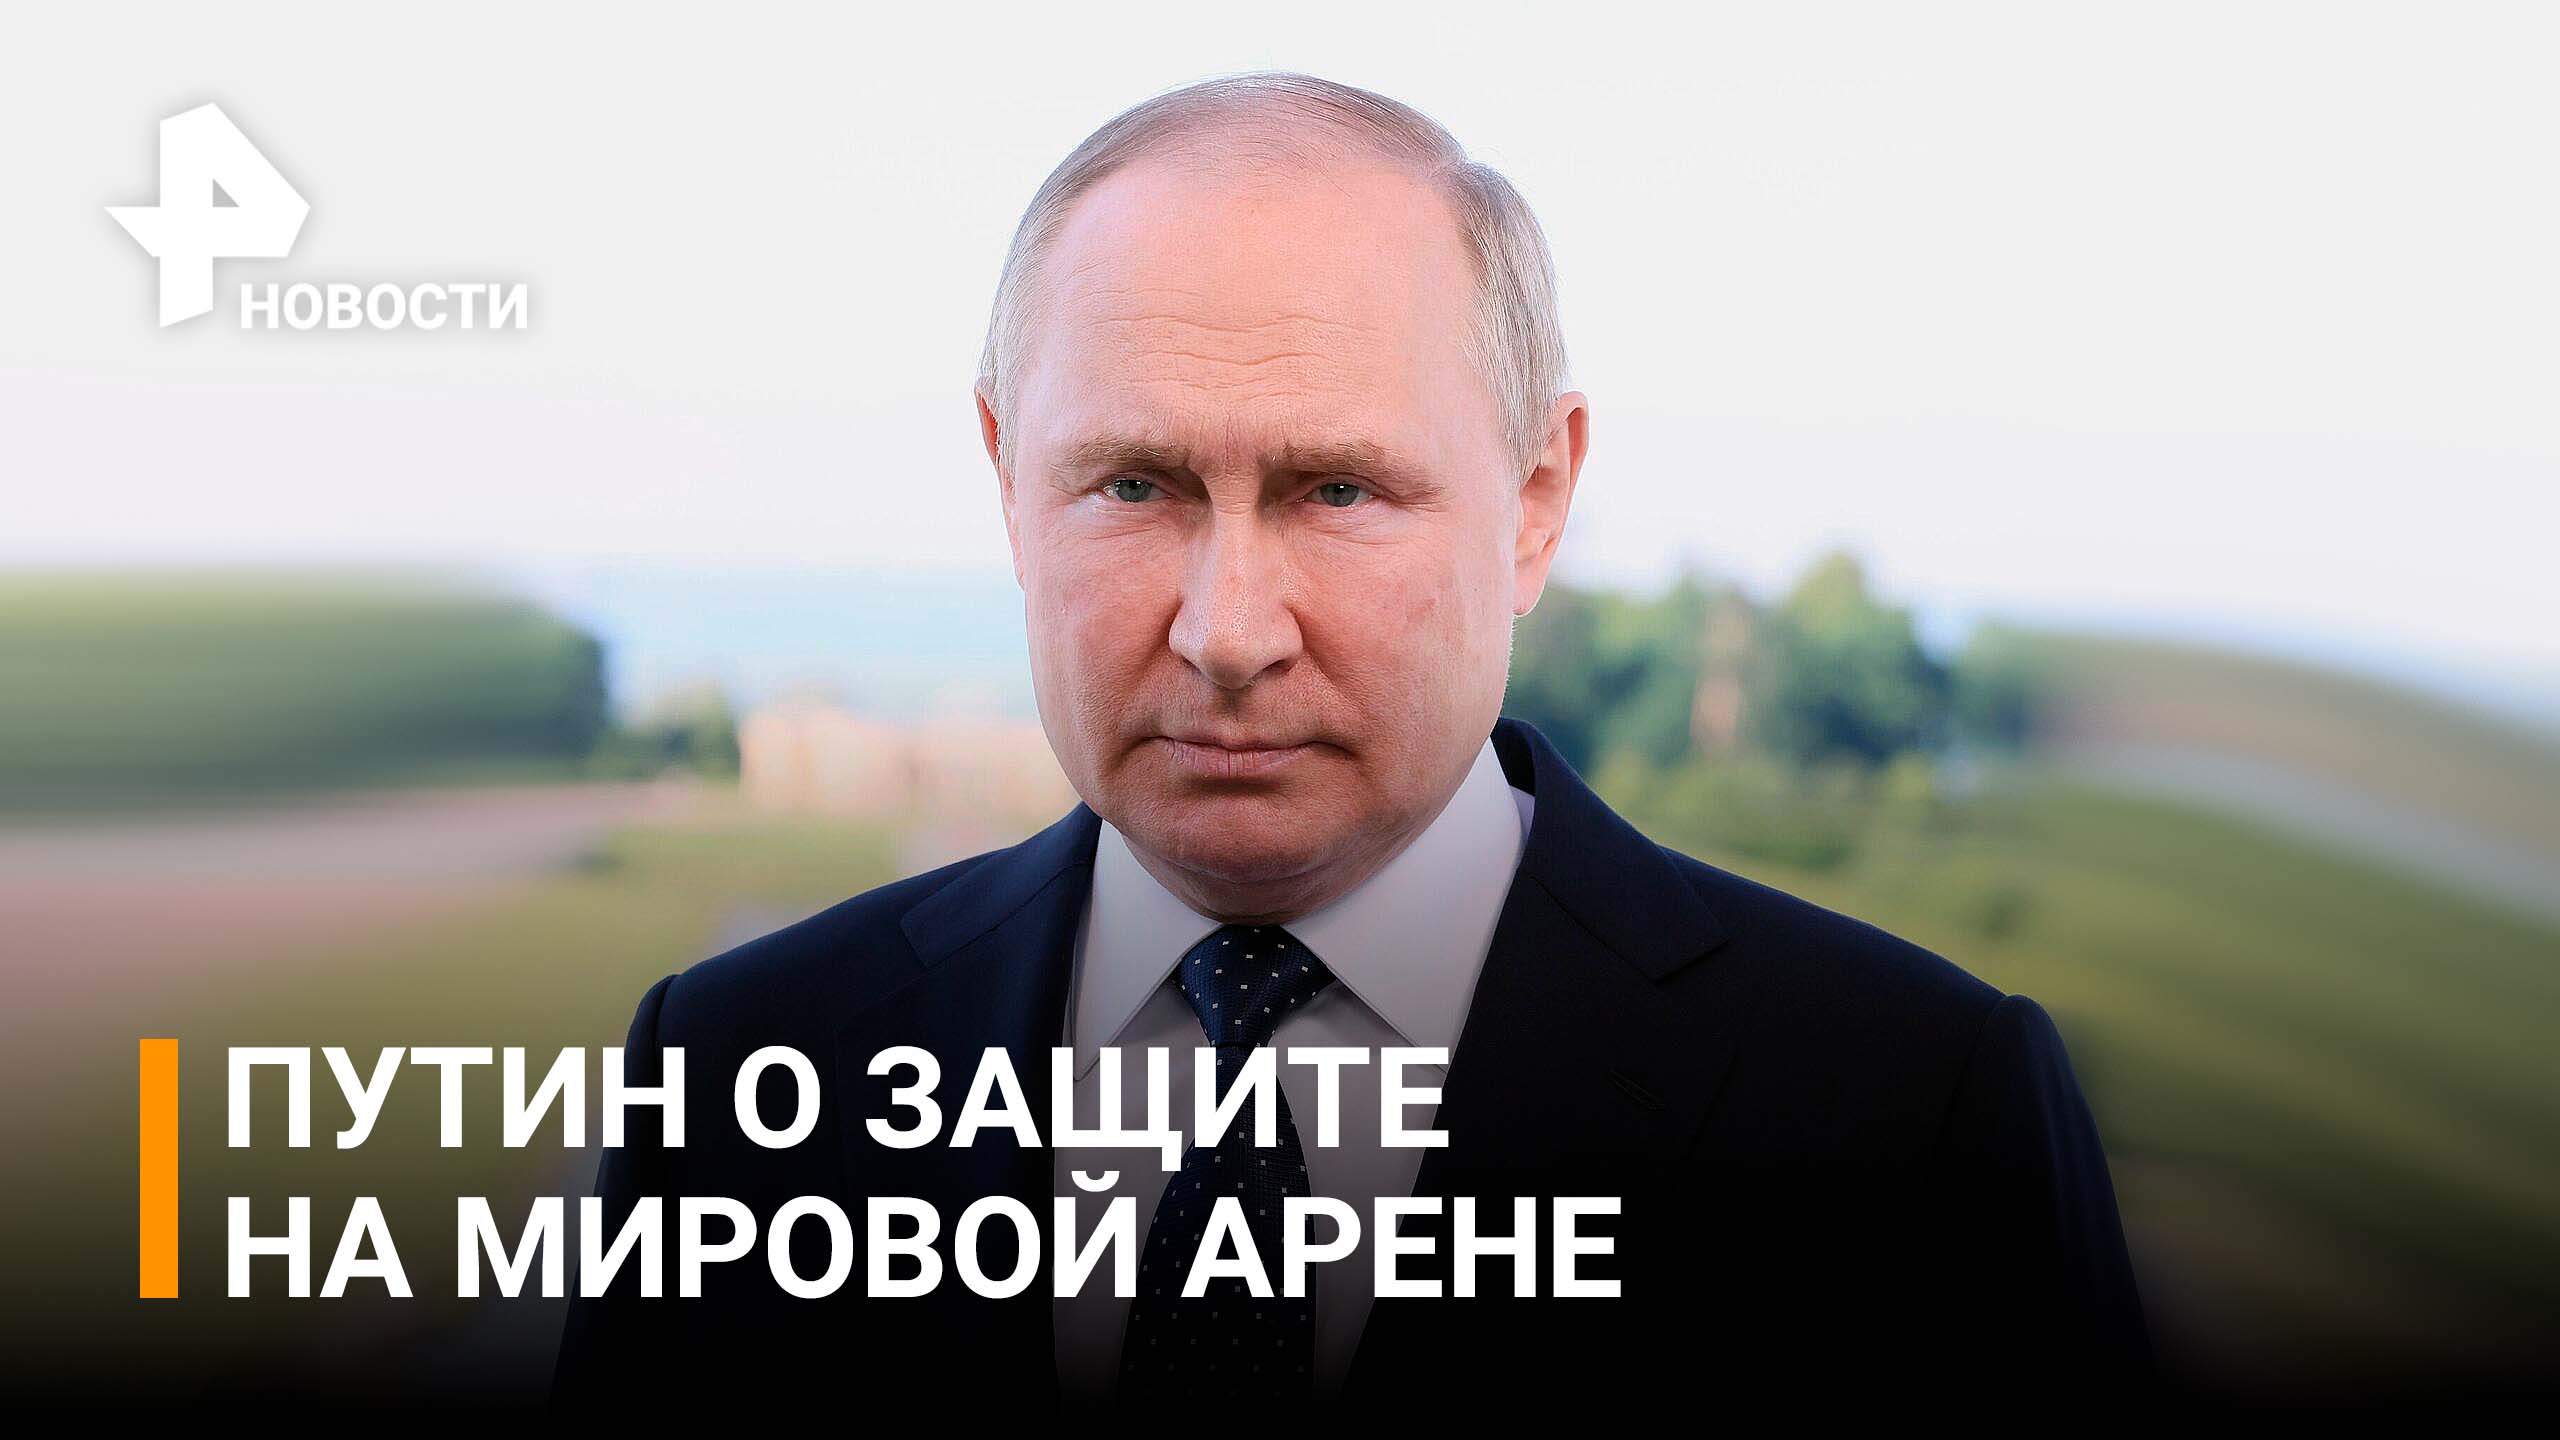 Владимир Путин о защите своих прав на мировой арене / РЕН Новости